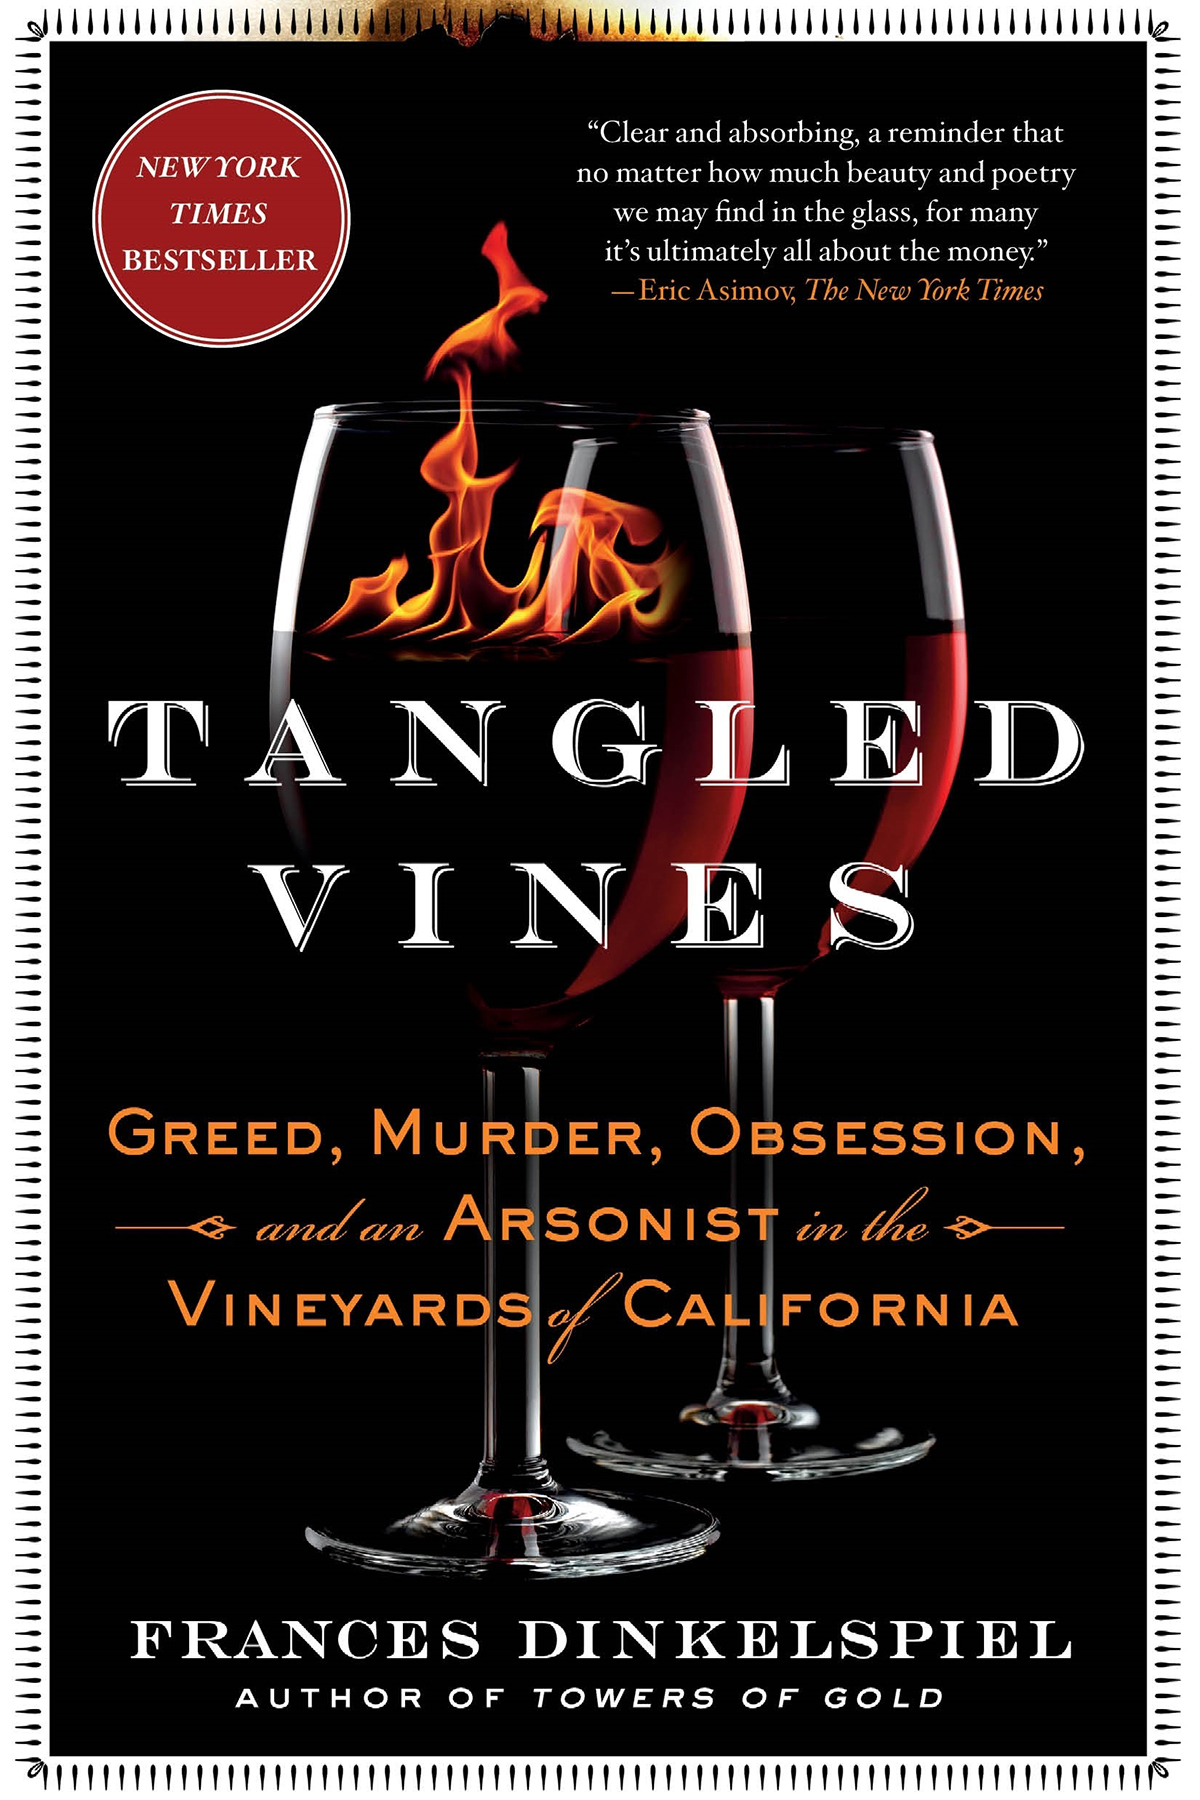 Tangled-Vines-Frances-Dinkelspiel-paperback